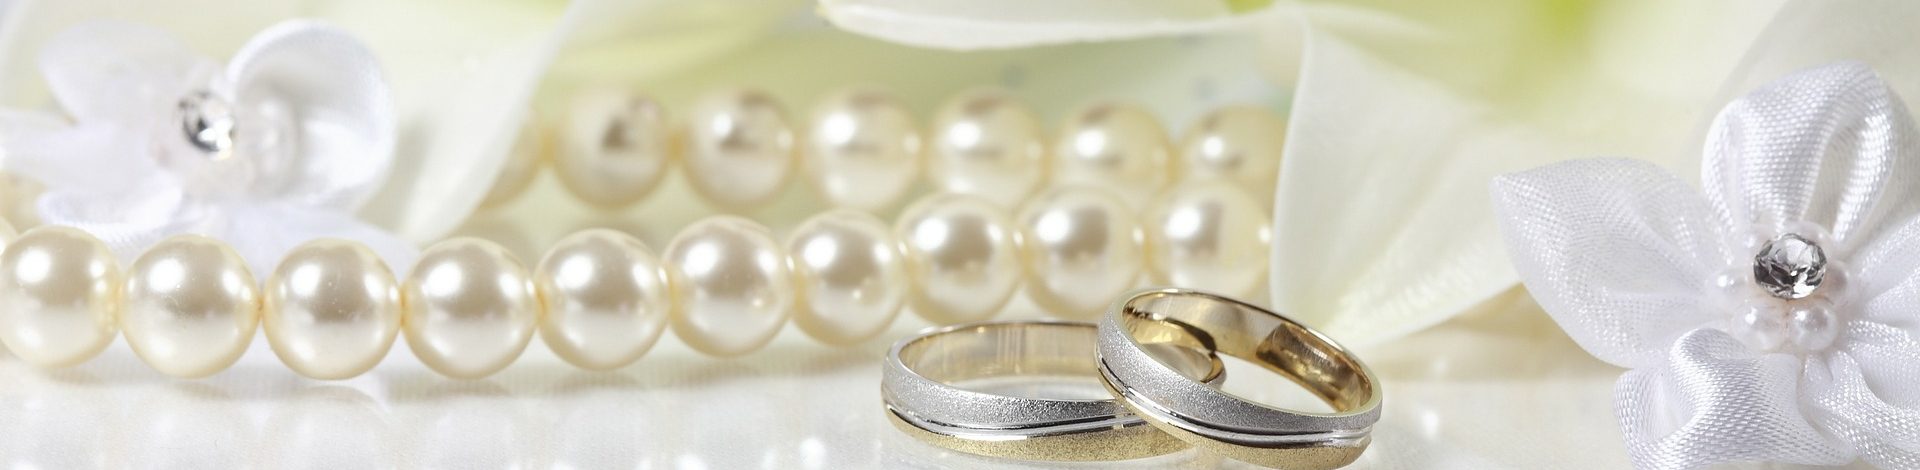 Годовщины и названия свадьбы: как их празднуют и что дарят